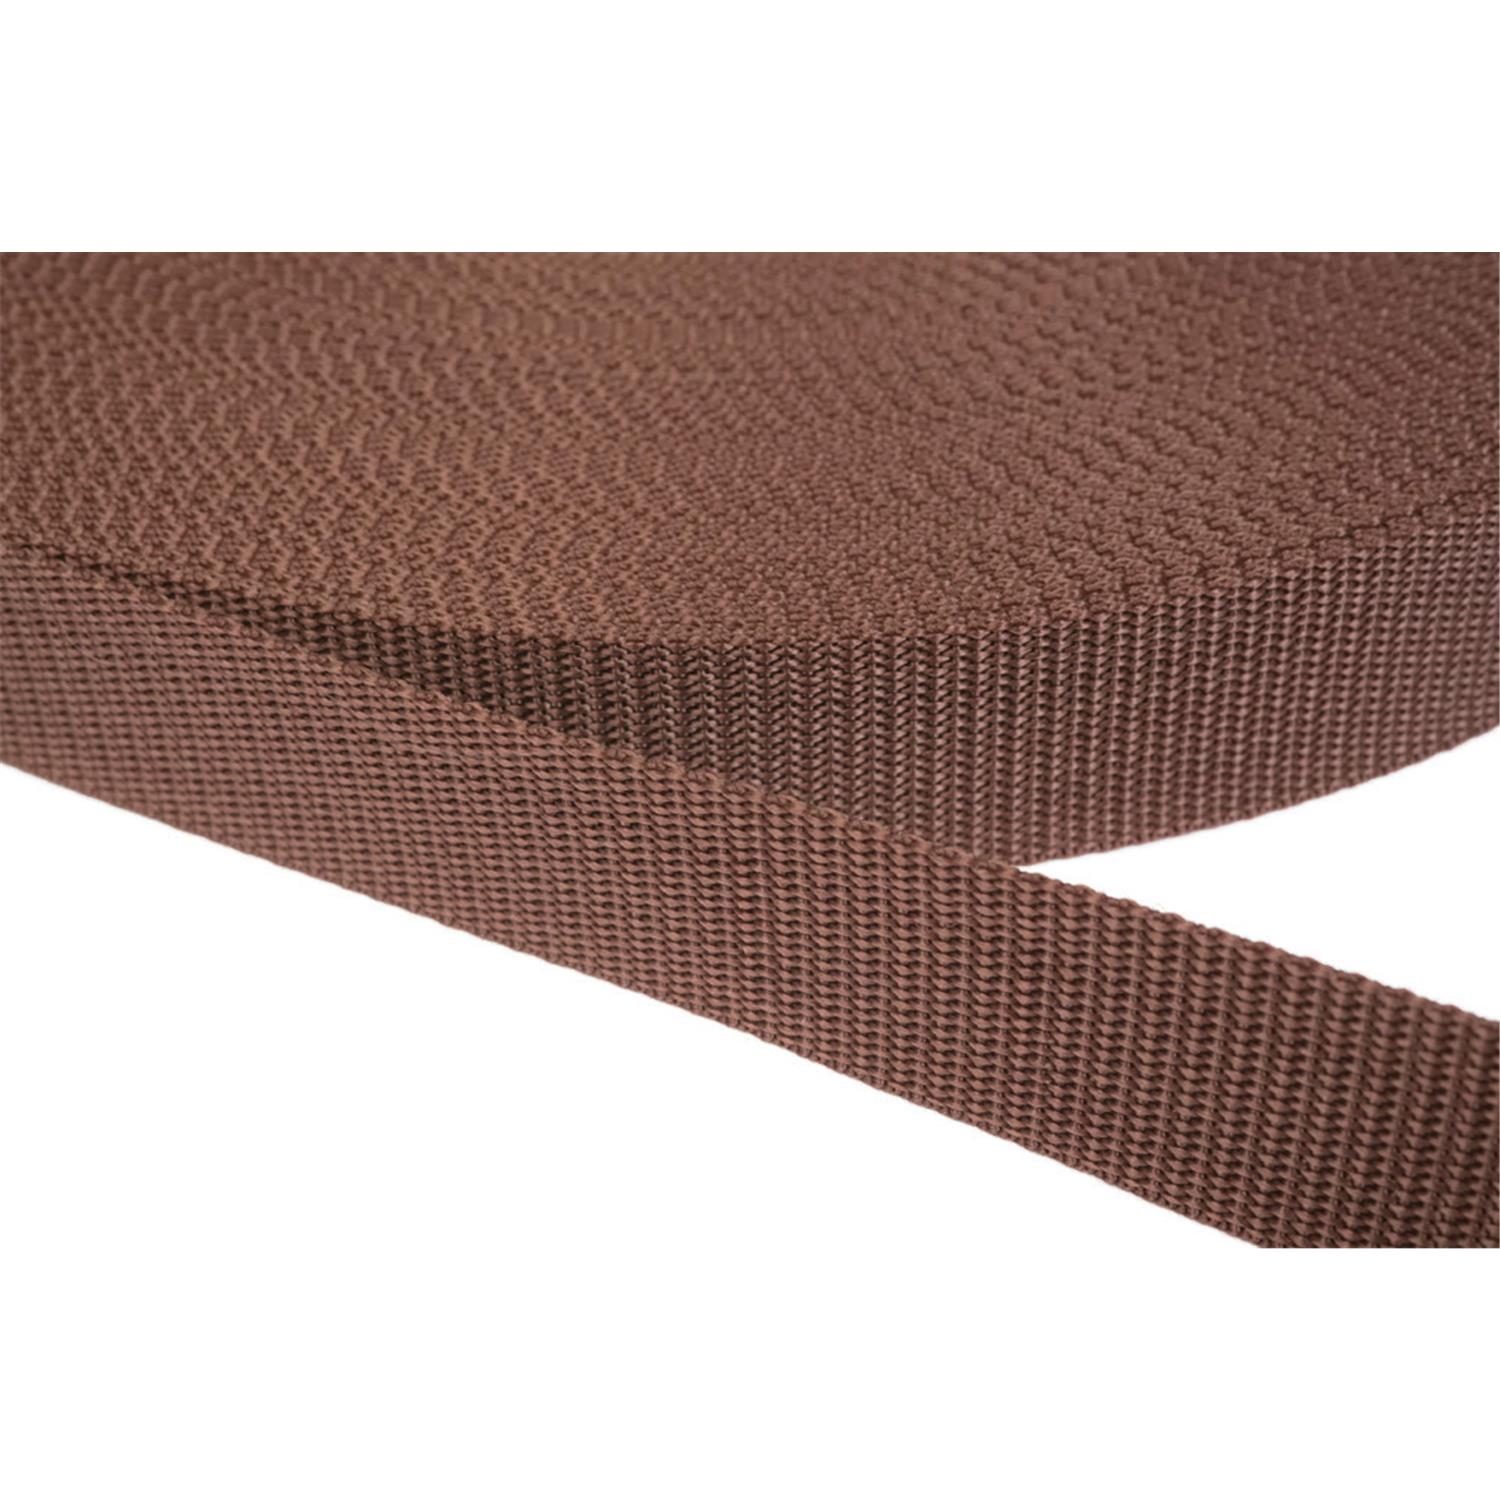 Gurtband 15mm breit aus Polypropylen in 41 Farben 07 - braun 12 Meter